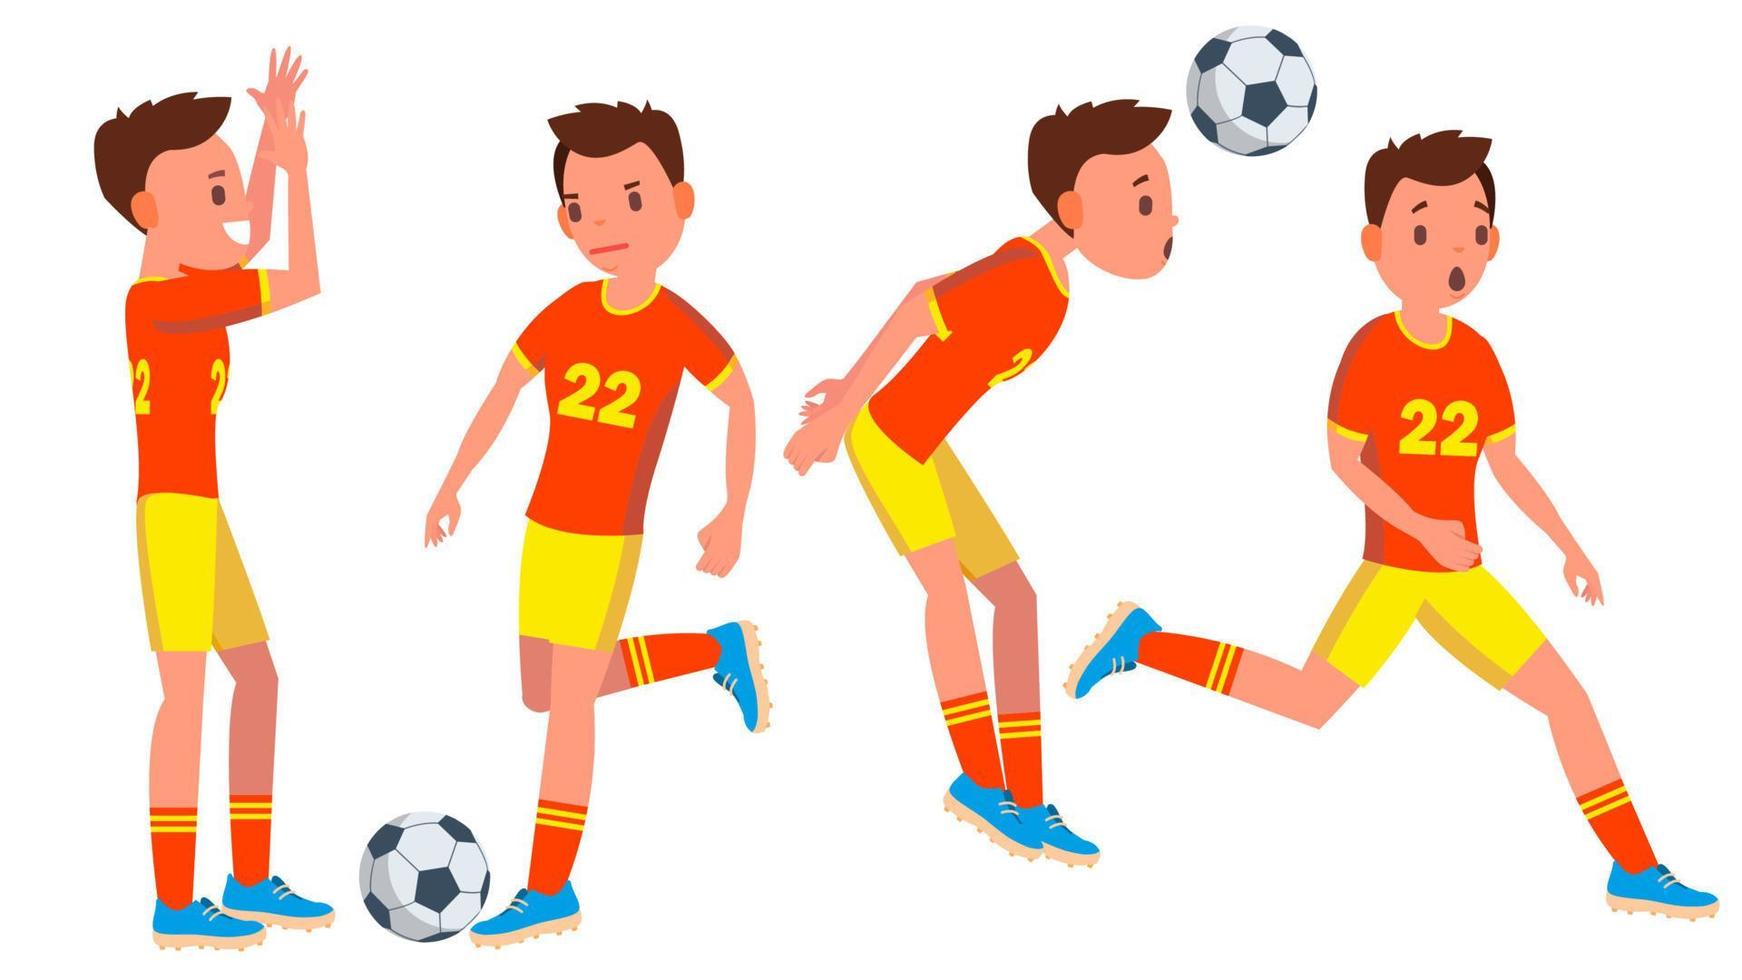 Vetores de Cartões De Futebol Masculinos De Desenho Animado Ilustração De  Vetor Isolado Pessoas Ativas Jogando Futebol Em Diferentes Poses e mais  imagens de Futebol - iStock